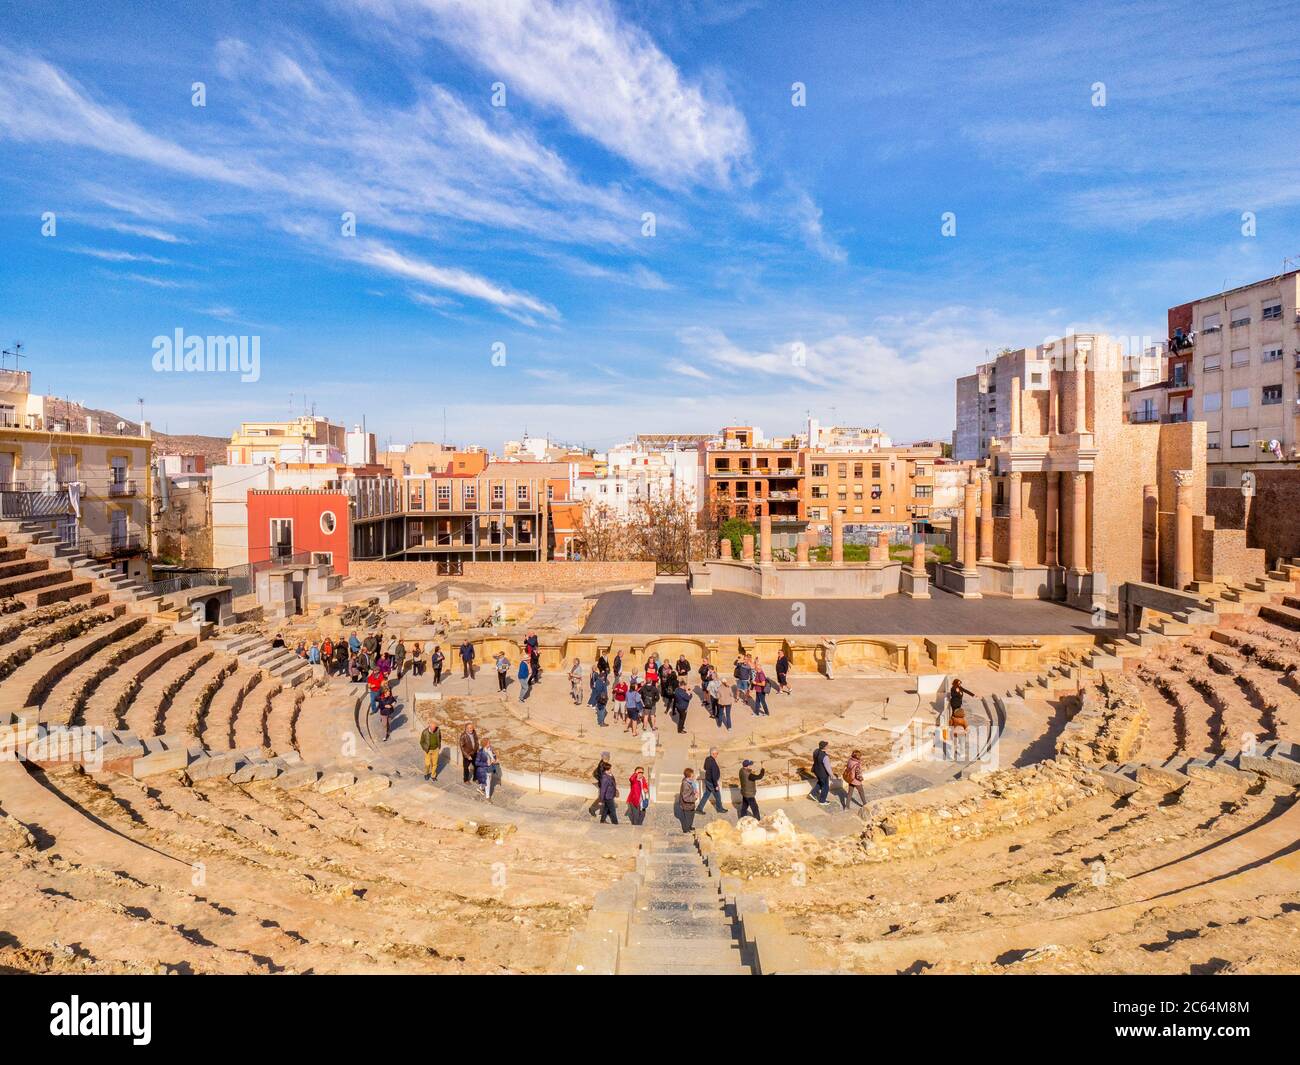 7 mars 2020: Cartagena, Espagne - visiteurs et guides dans le théâtre romain partiellement restauré de Cartagena, datant du règne d'Auguste. Banque D'Images